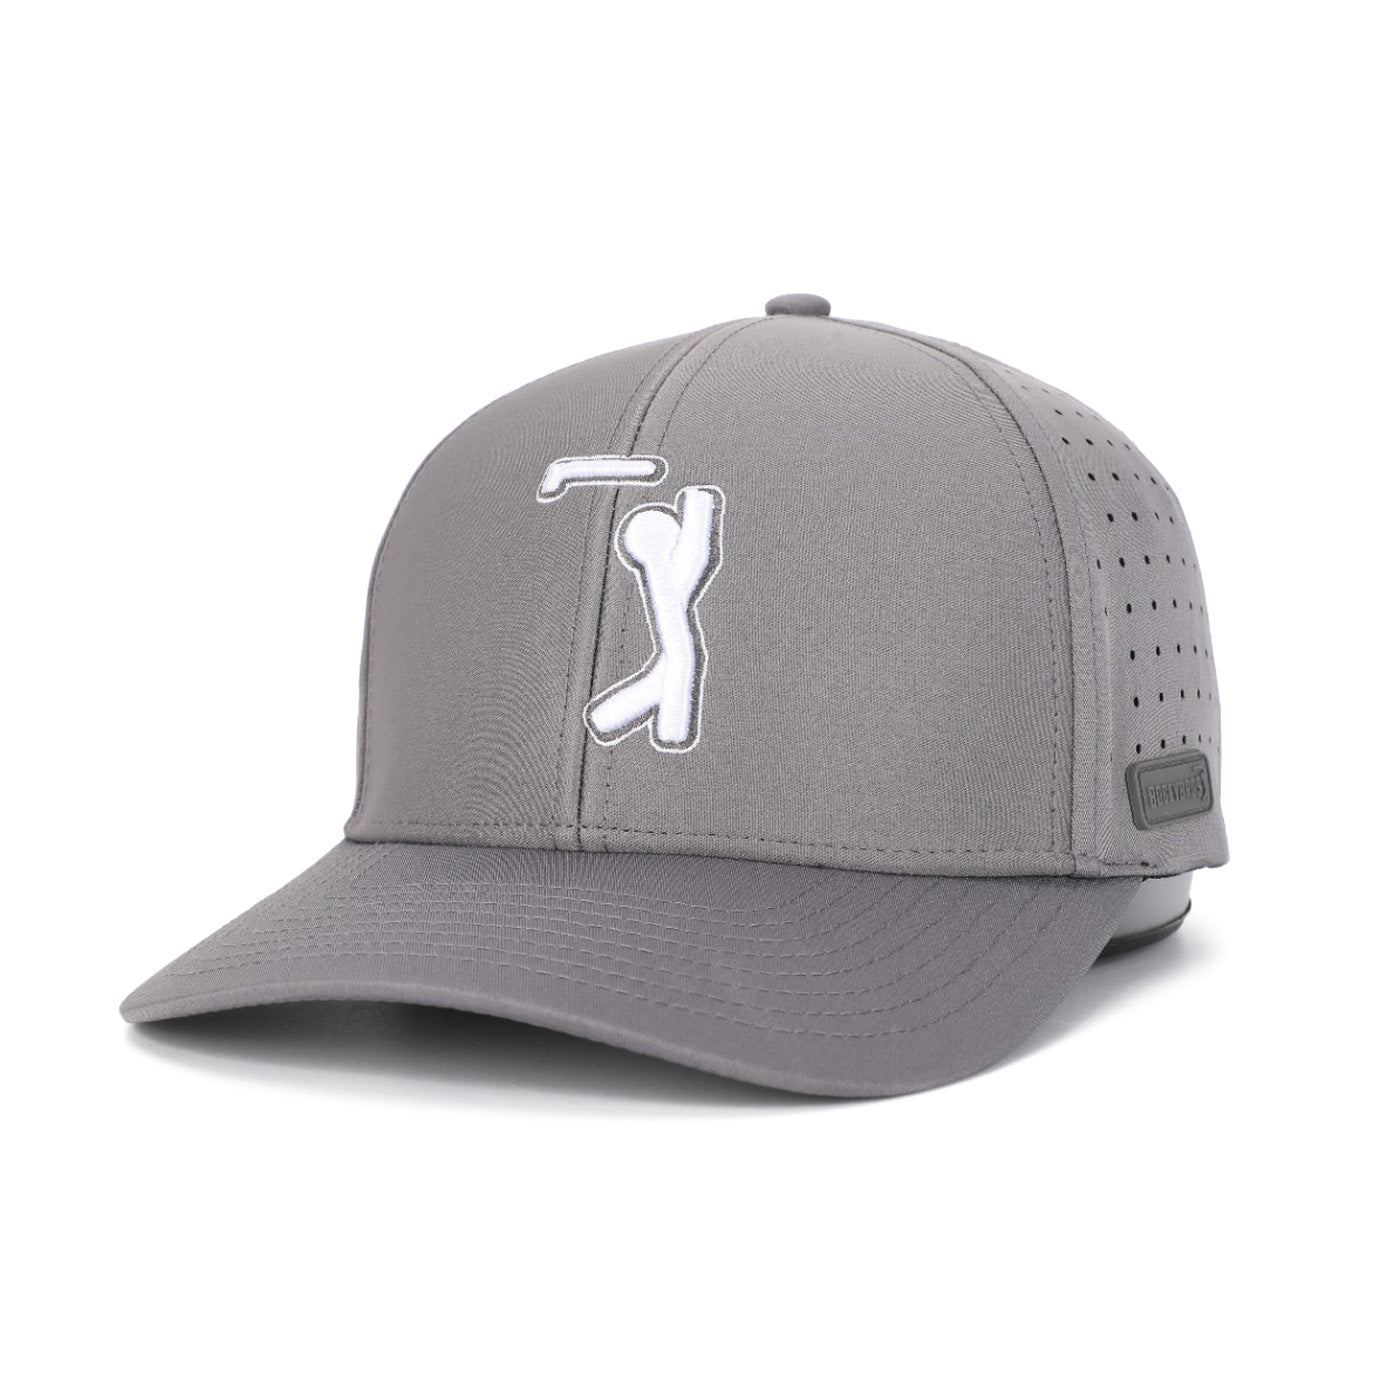 Bogeyman Dark Grey - Performance Golf Hat - Stretch Fit